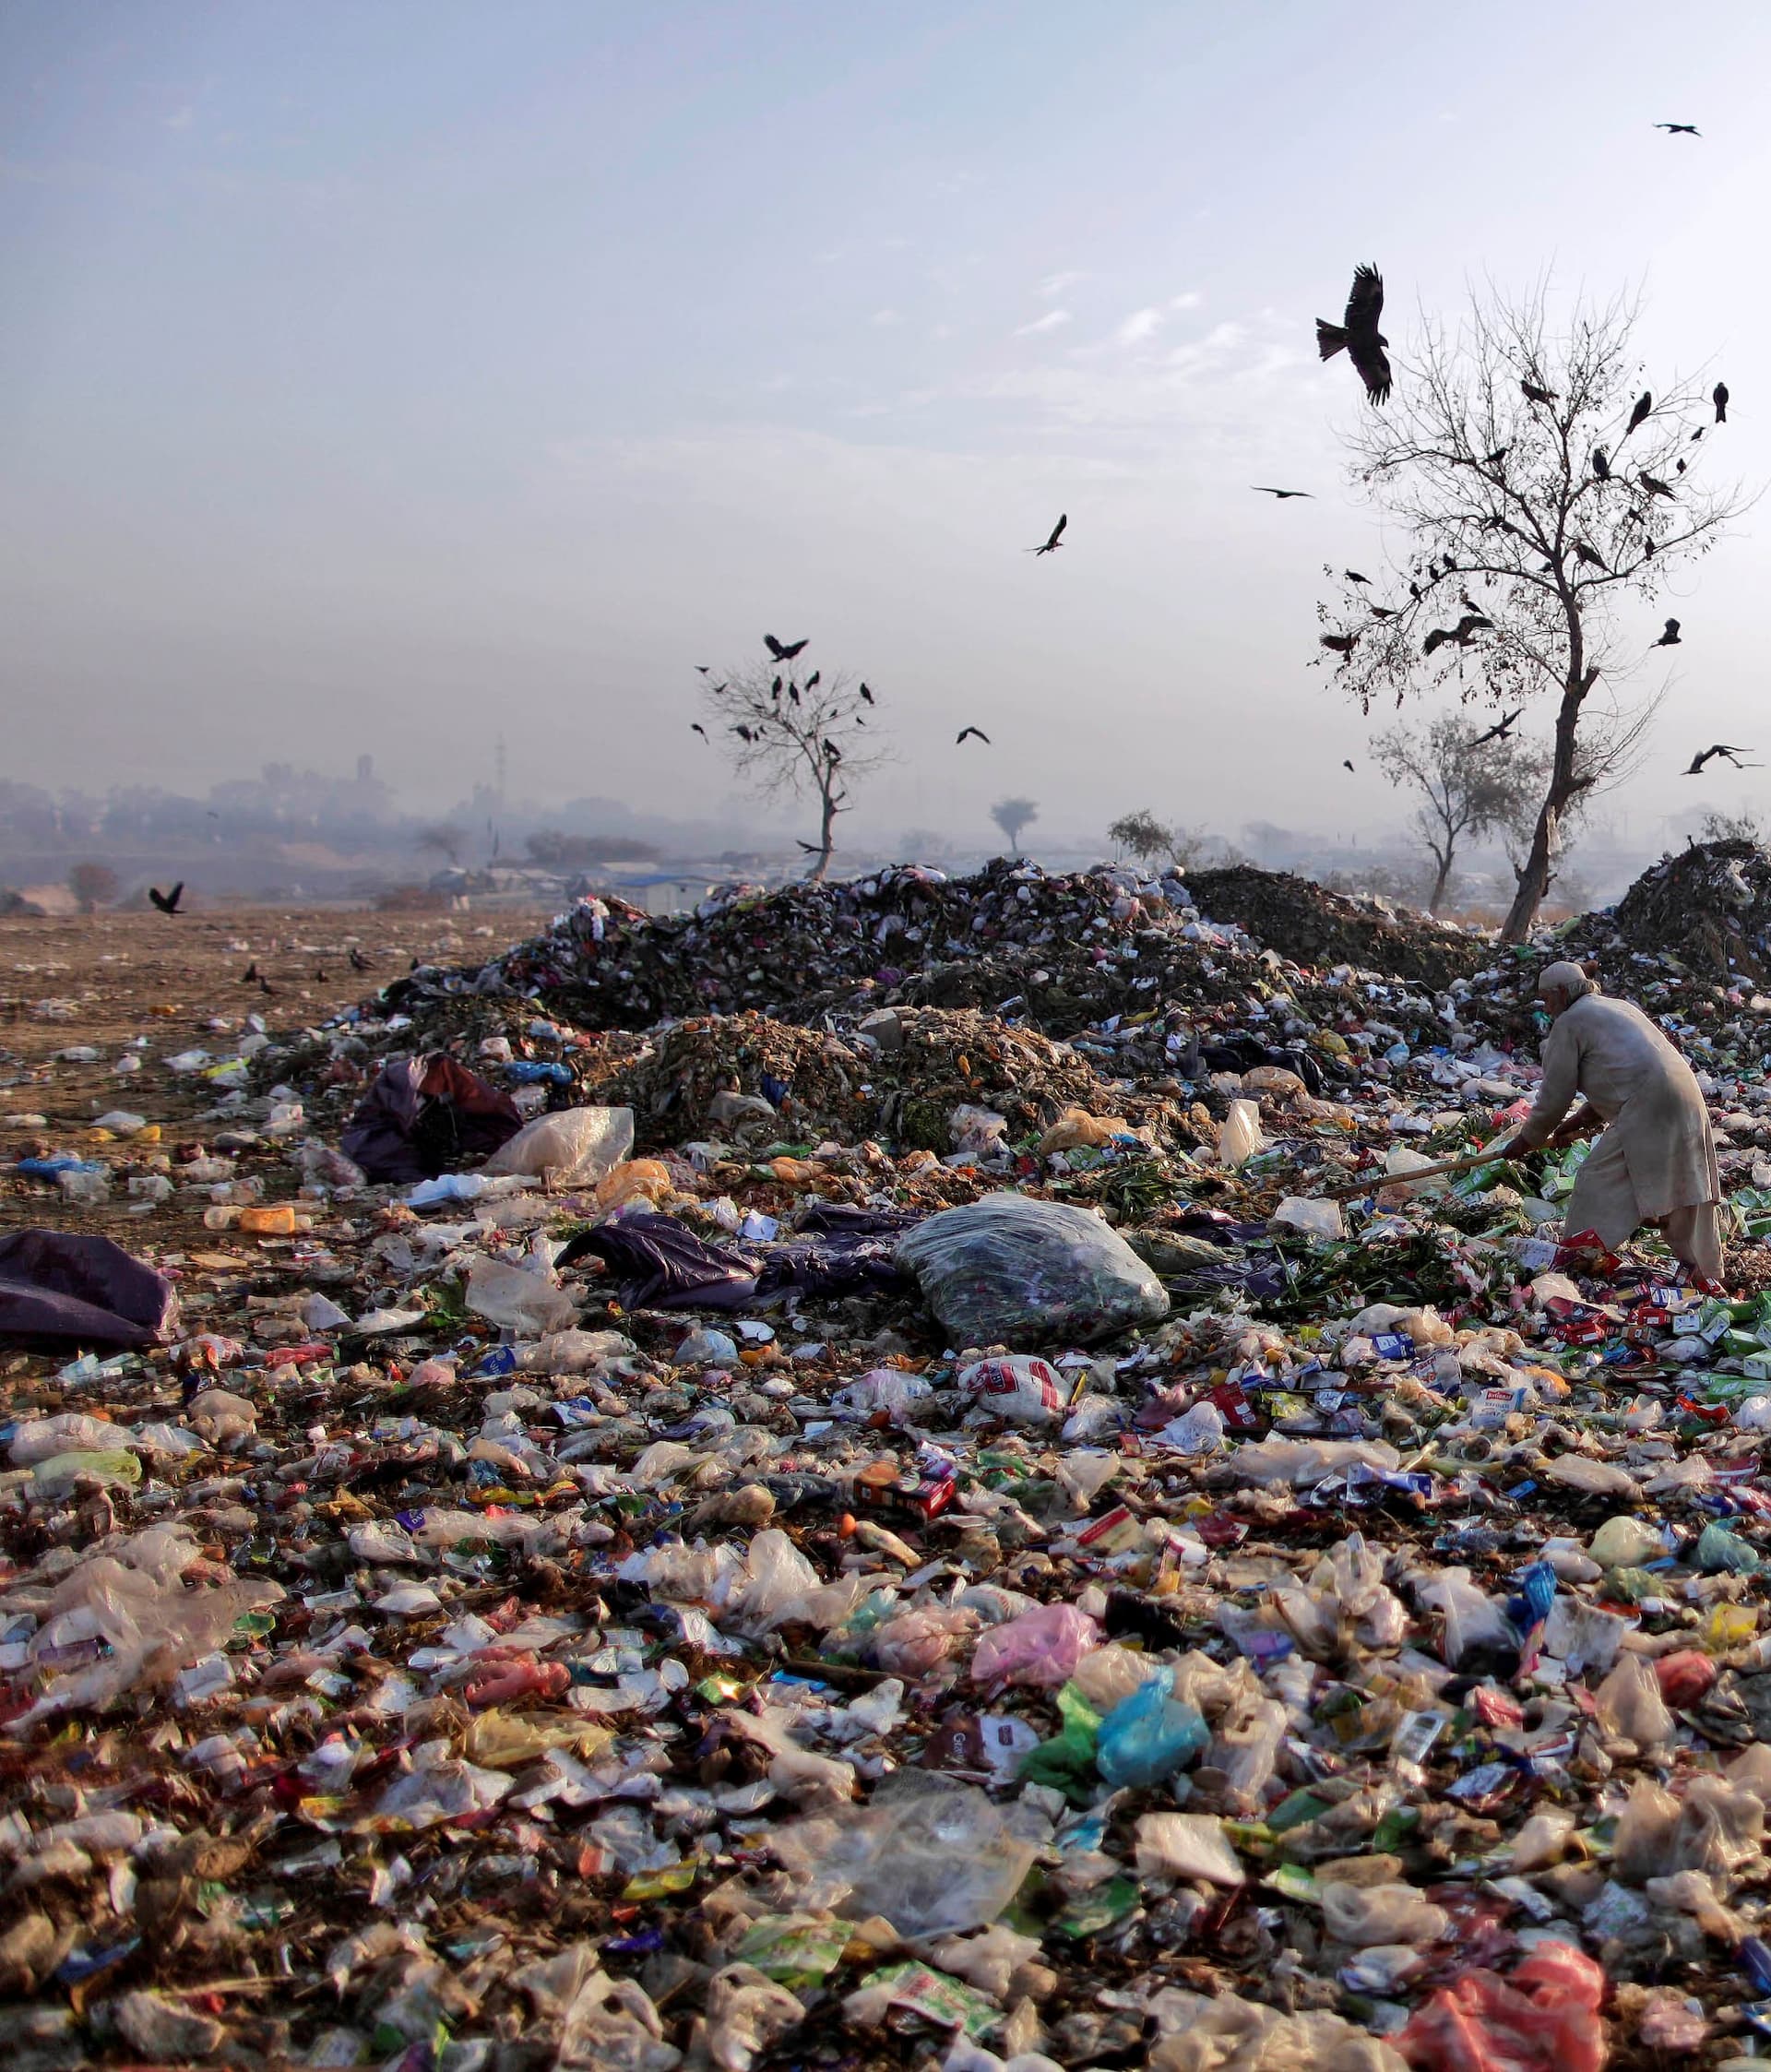 Összességében túl sok a hulladéklerakatunk, mégis kevesebb kommunális hulladékot termelünk, mint az átlag